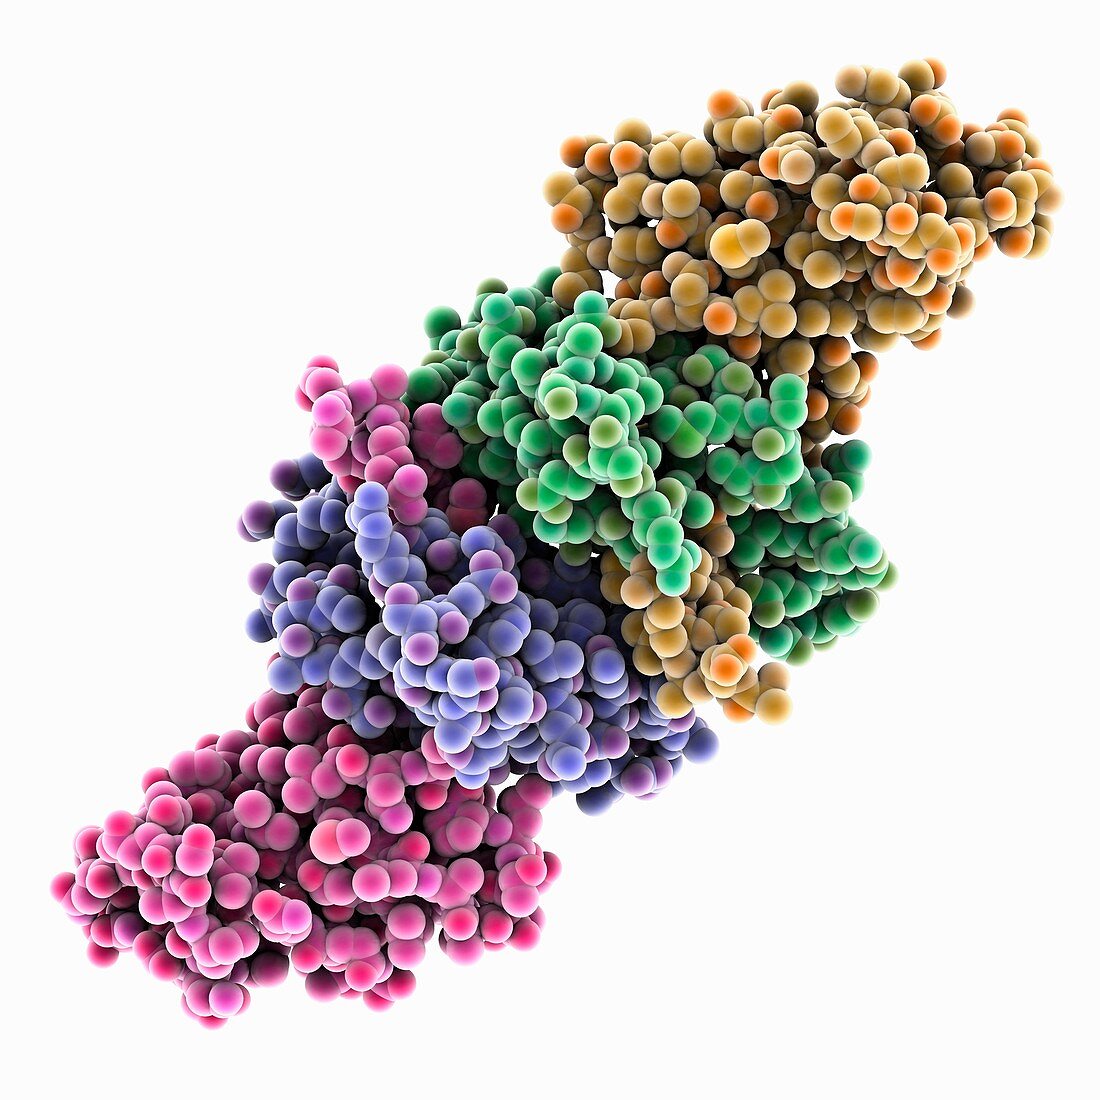 SARS-Coronavirus non-structural proteins, illustration